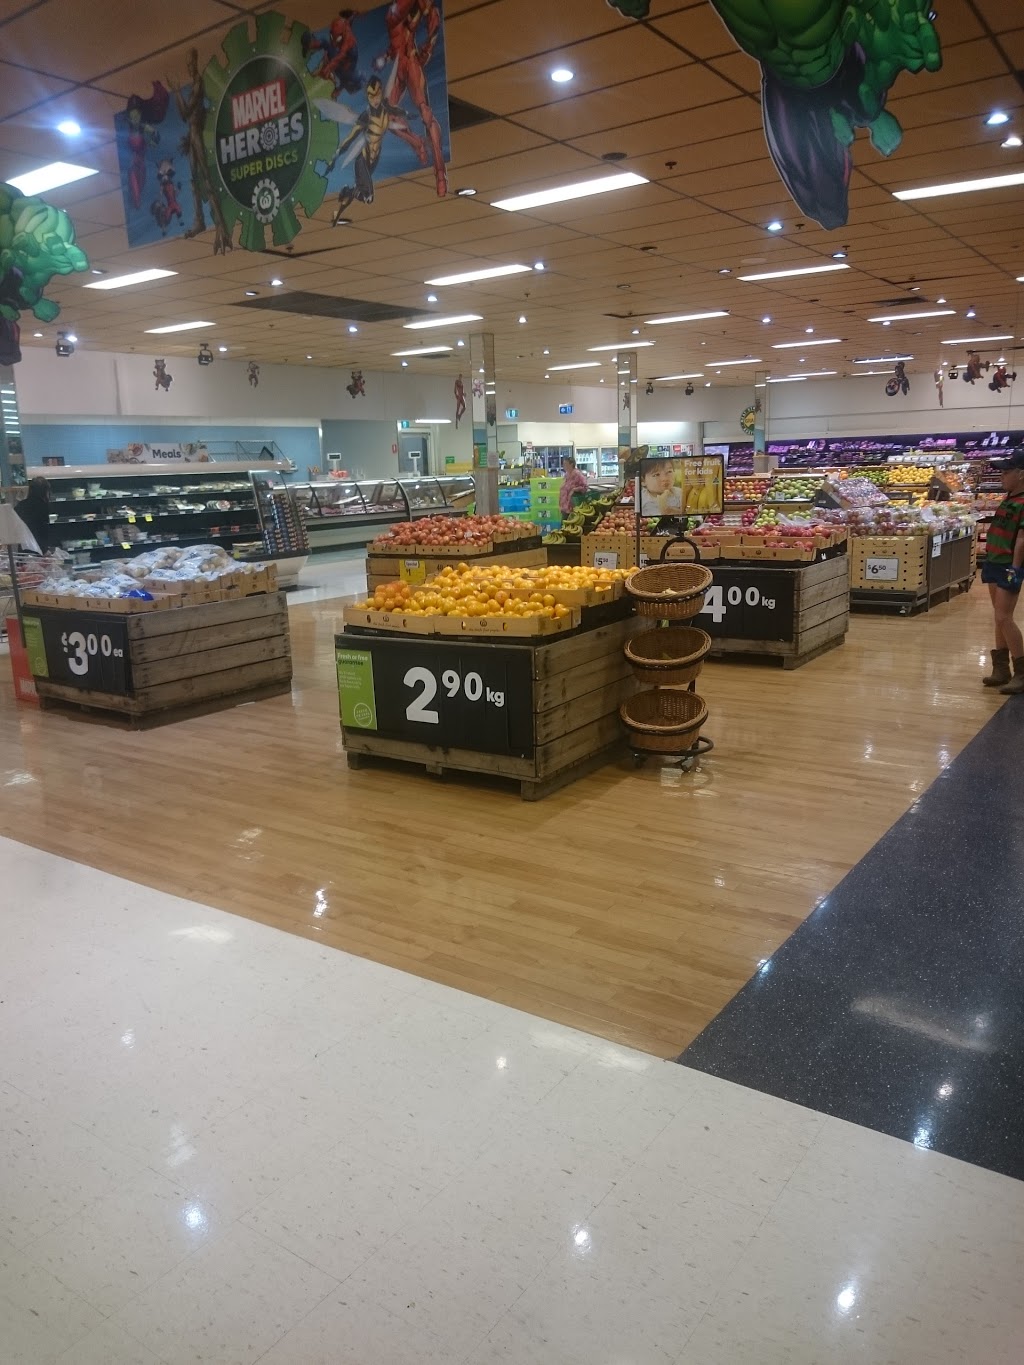 Woolworths Wellington | supermarket | 81 Arthur St, Wellington NSW 2820, Australia | 0268455100 OR +61 2 6845 5100